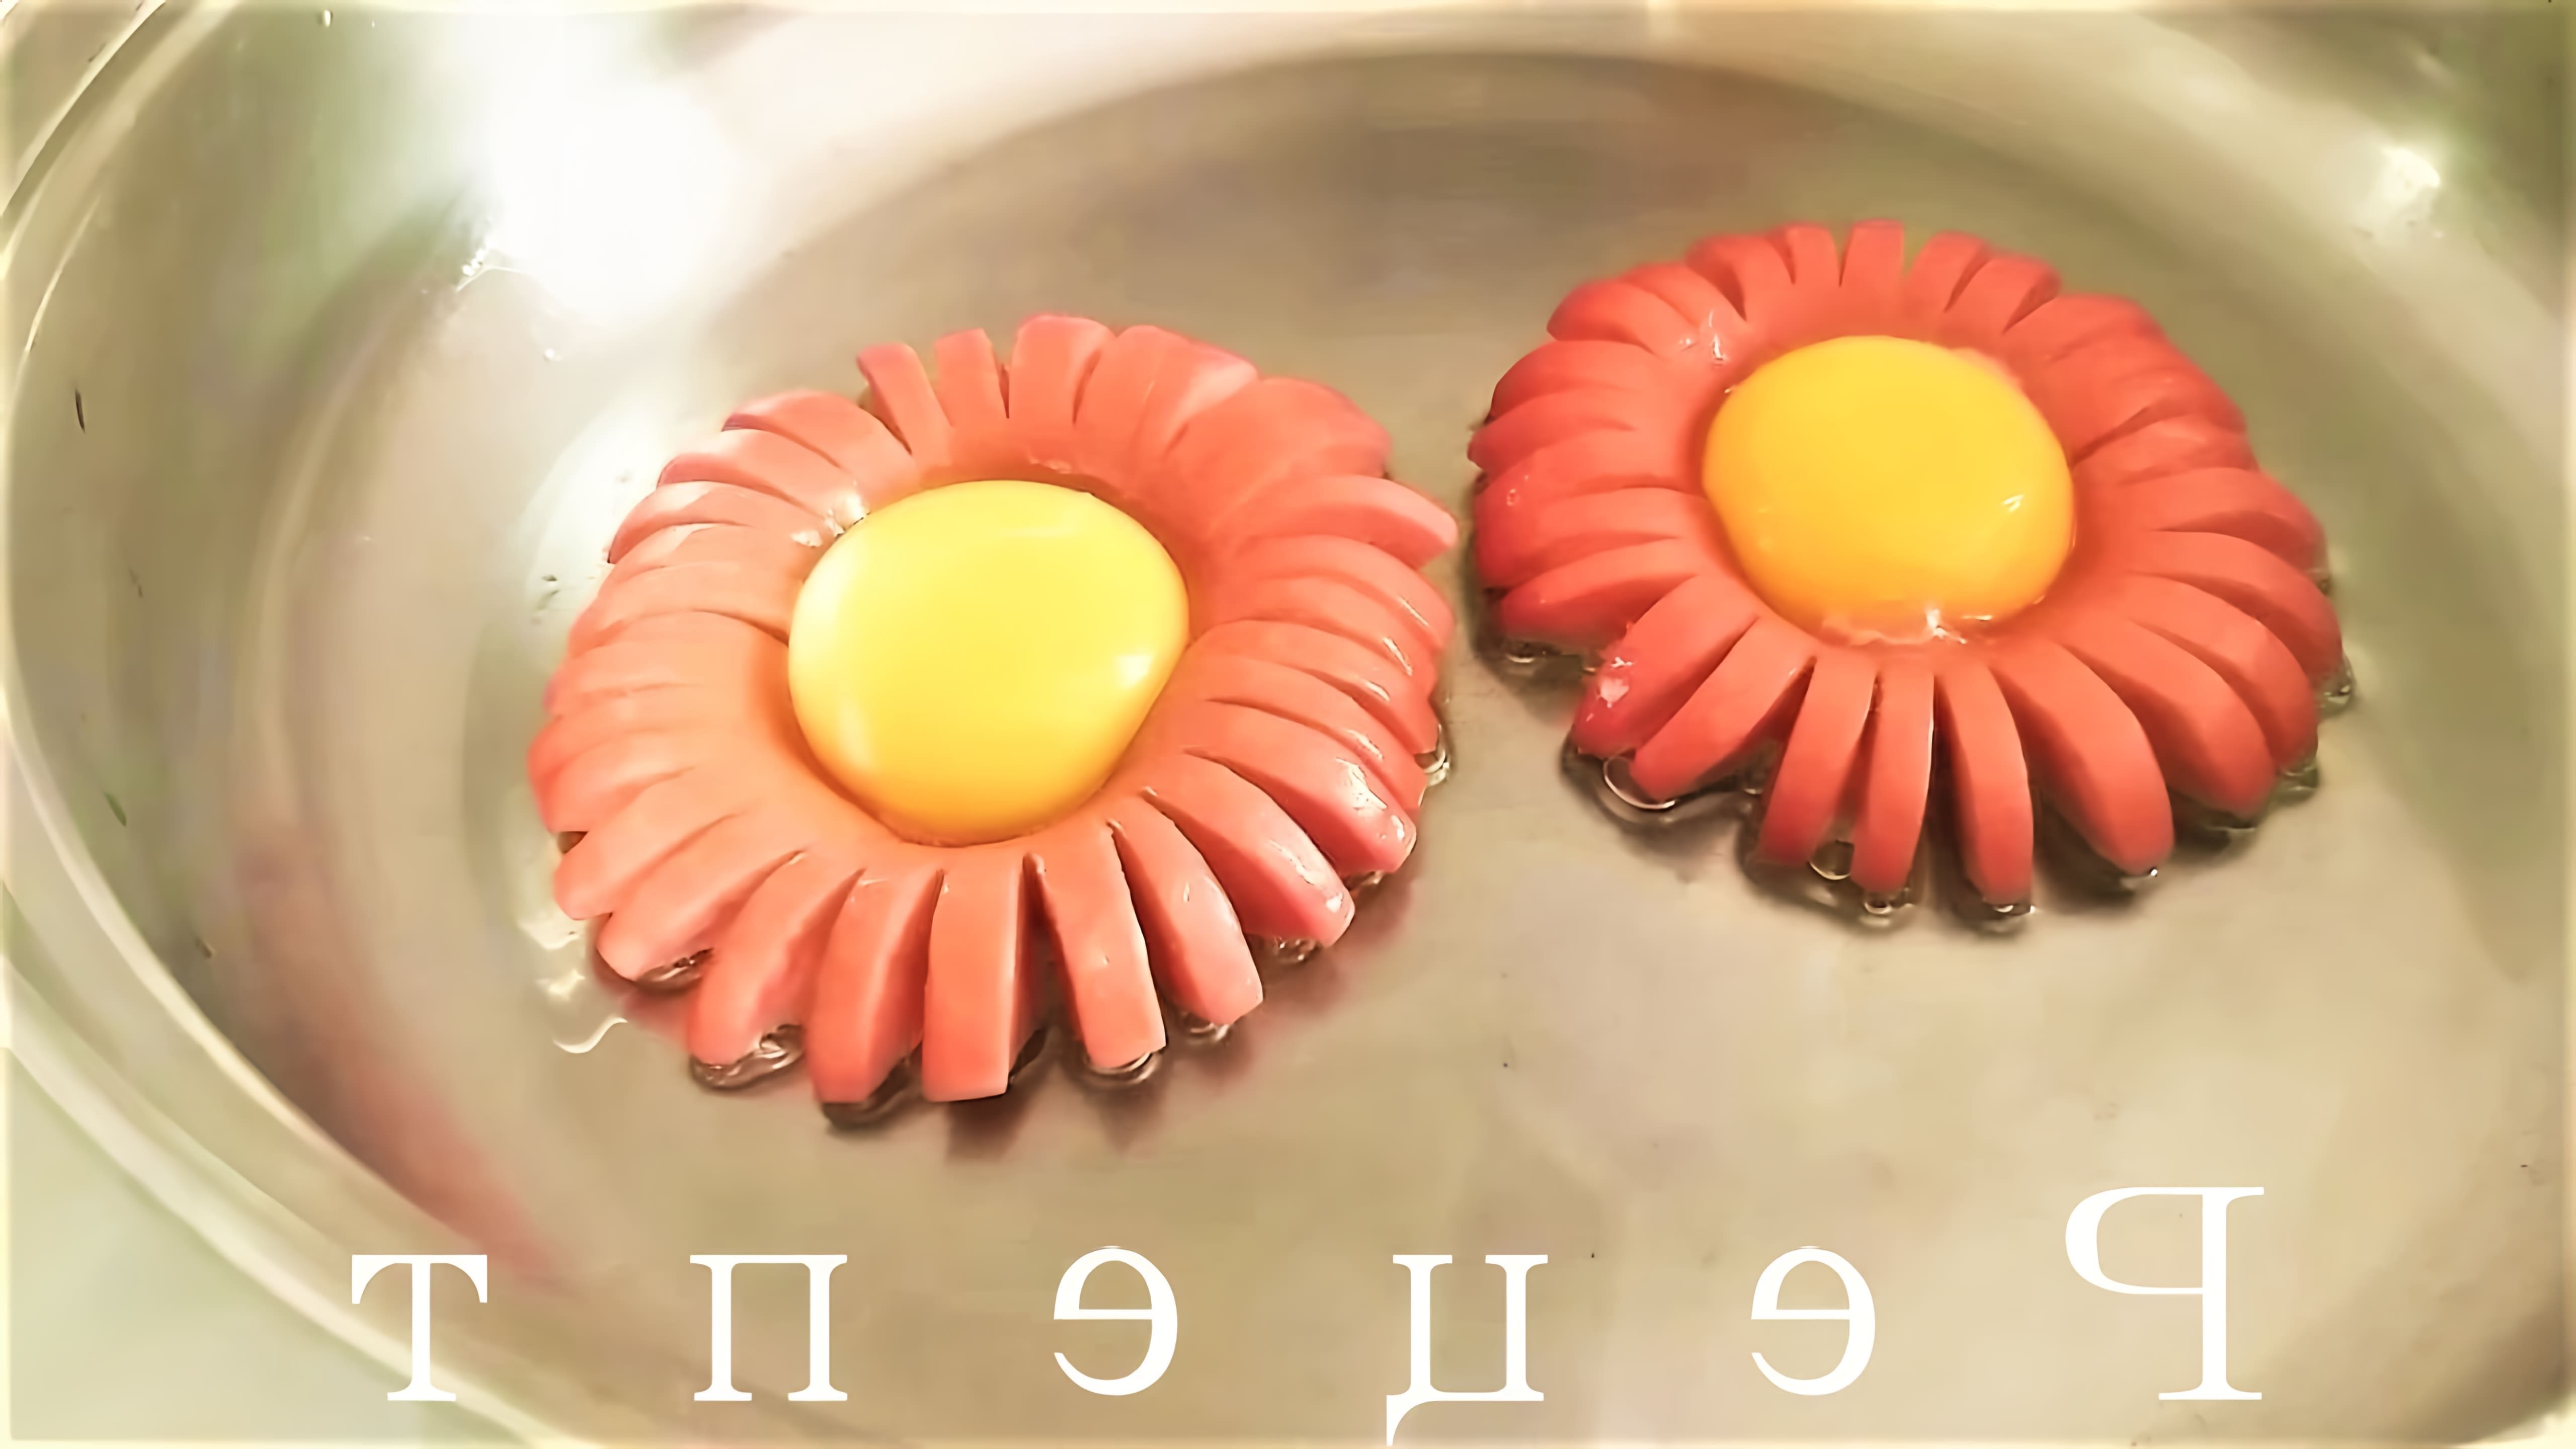 Жаренные сосиски с яйцами - новый способ приготовить завтрак